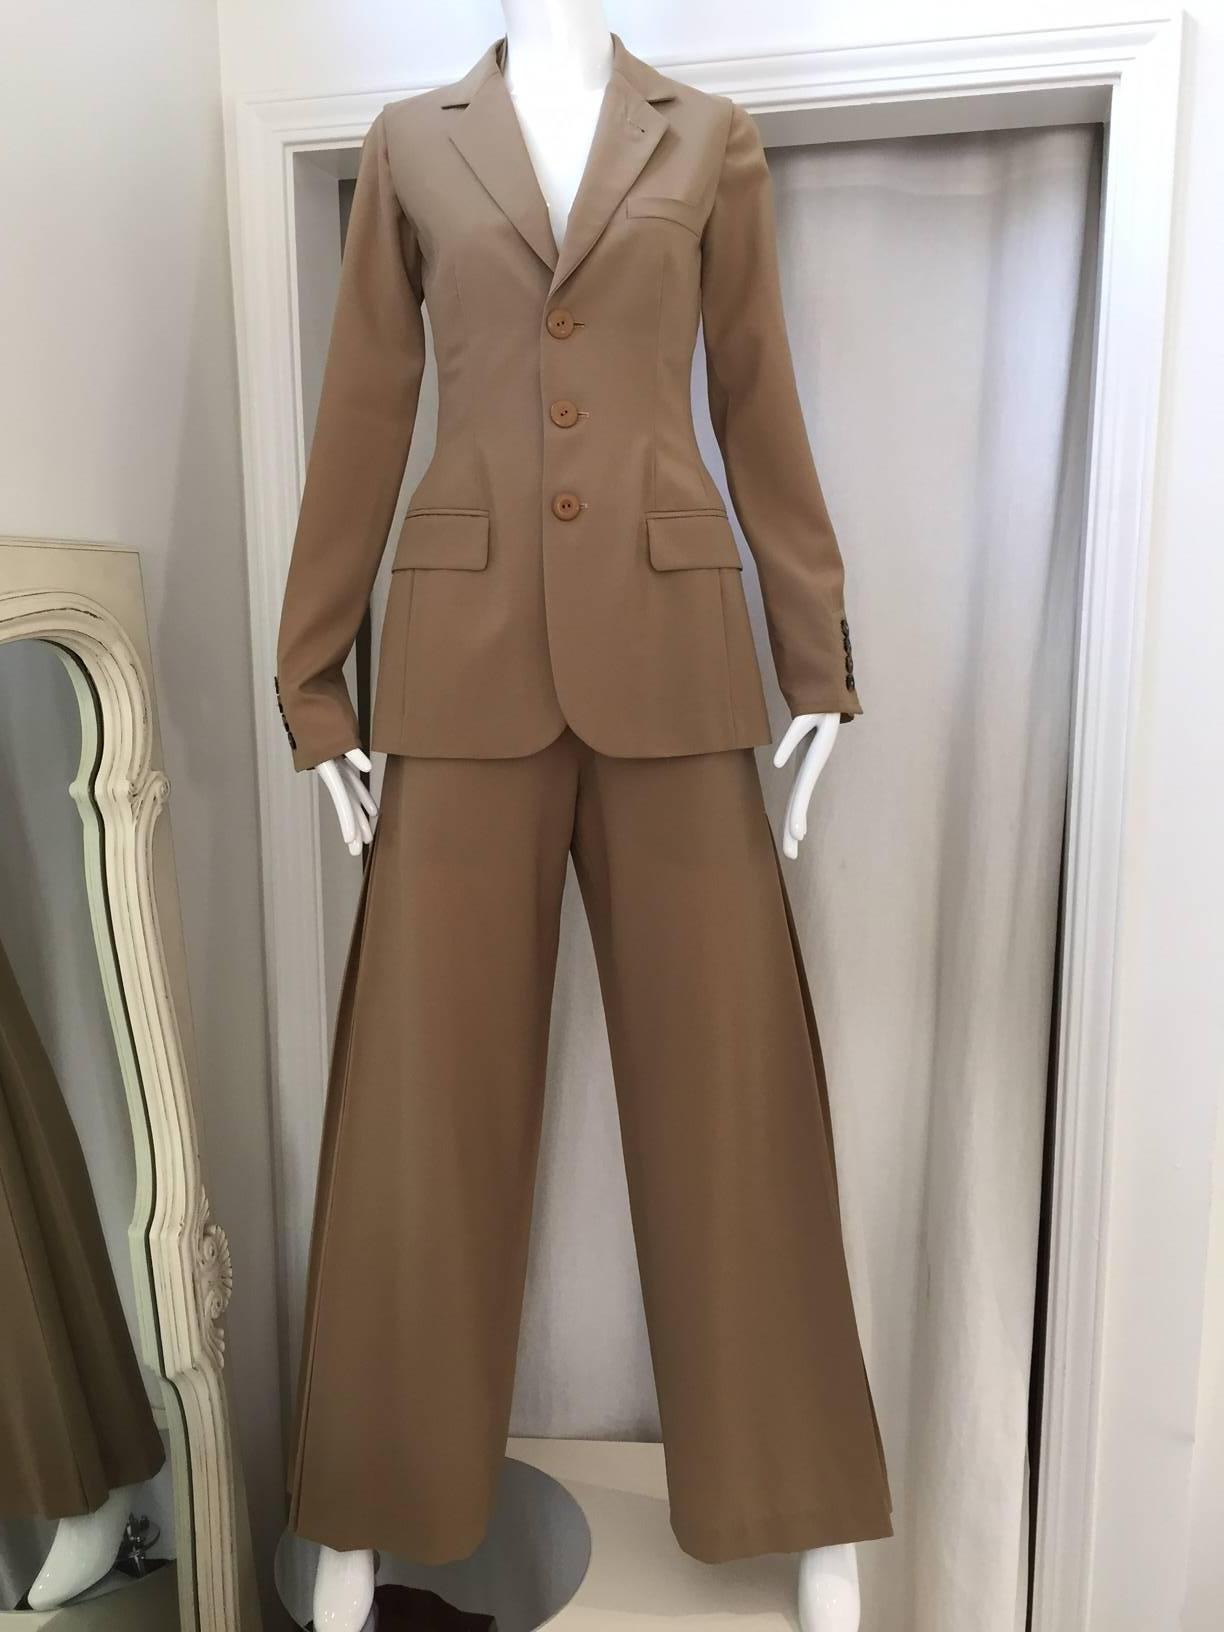 90s Jean Paul Gaultier tan light wool vest, pant suite with detachable sleeve. Wide pleated pants.
Vest: size 4
Pants: size: 6